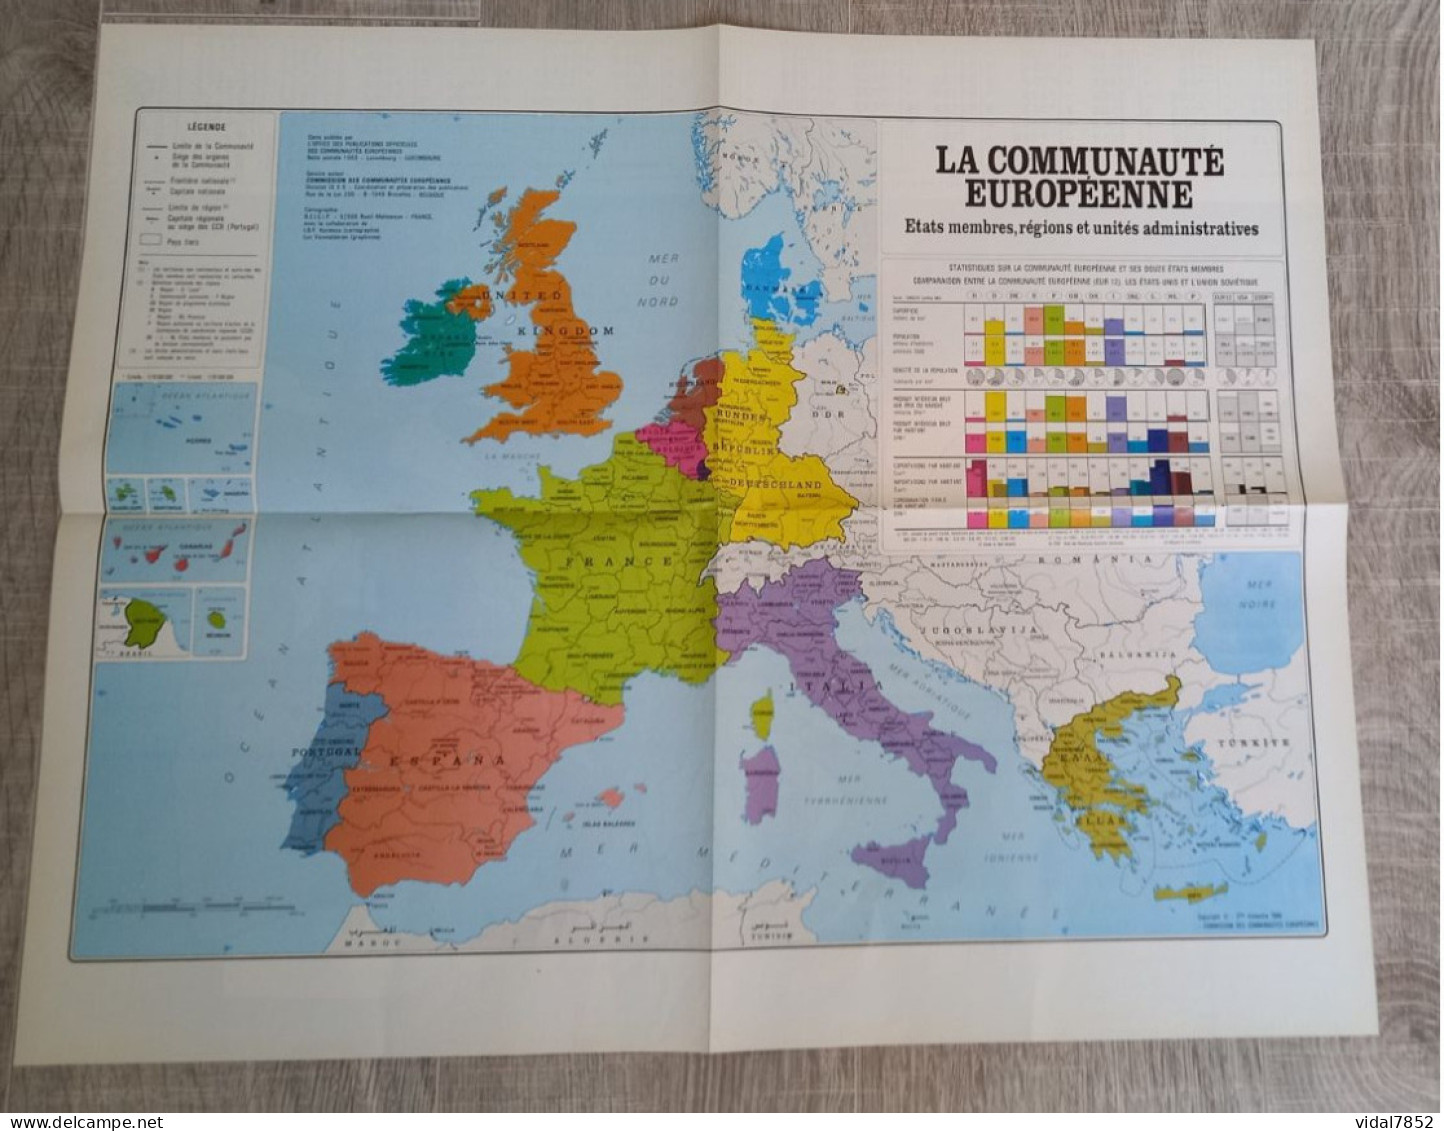 Calendrier-Almanach Des P.T.T 1991-Poster Intérieur Communauté Européenne--Tom Jerry Département AIN-01-Référence 414 - Grand Format : 1991-00